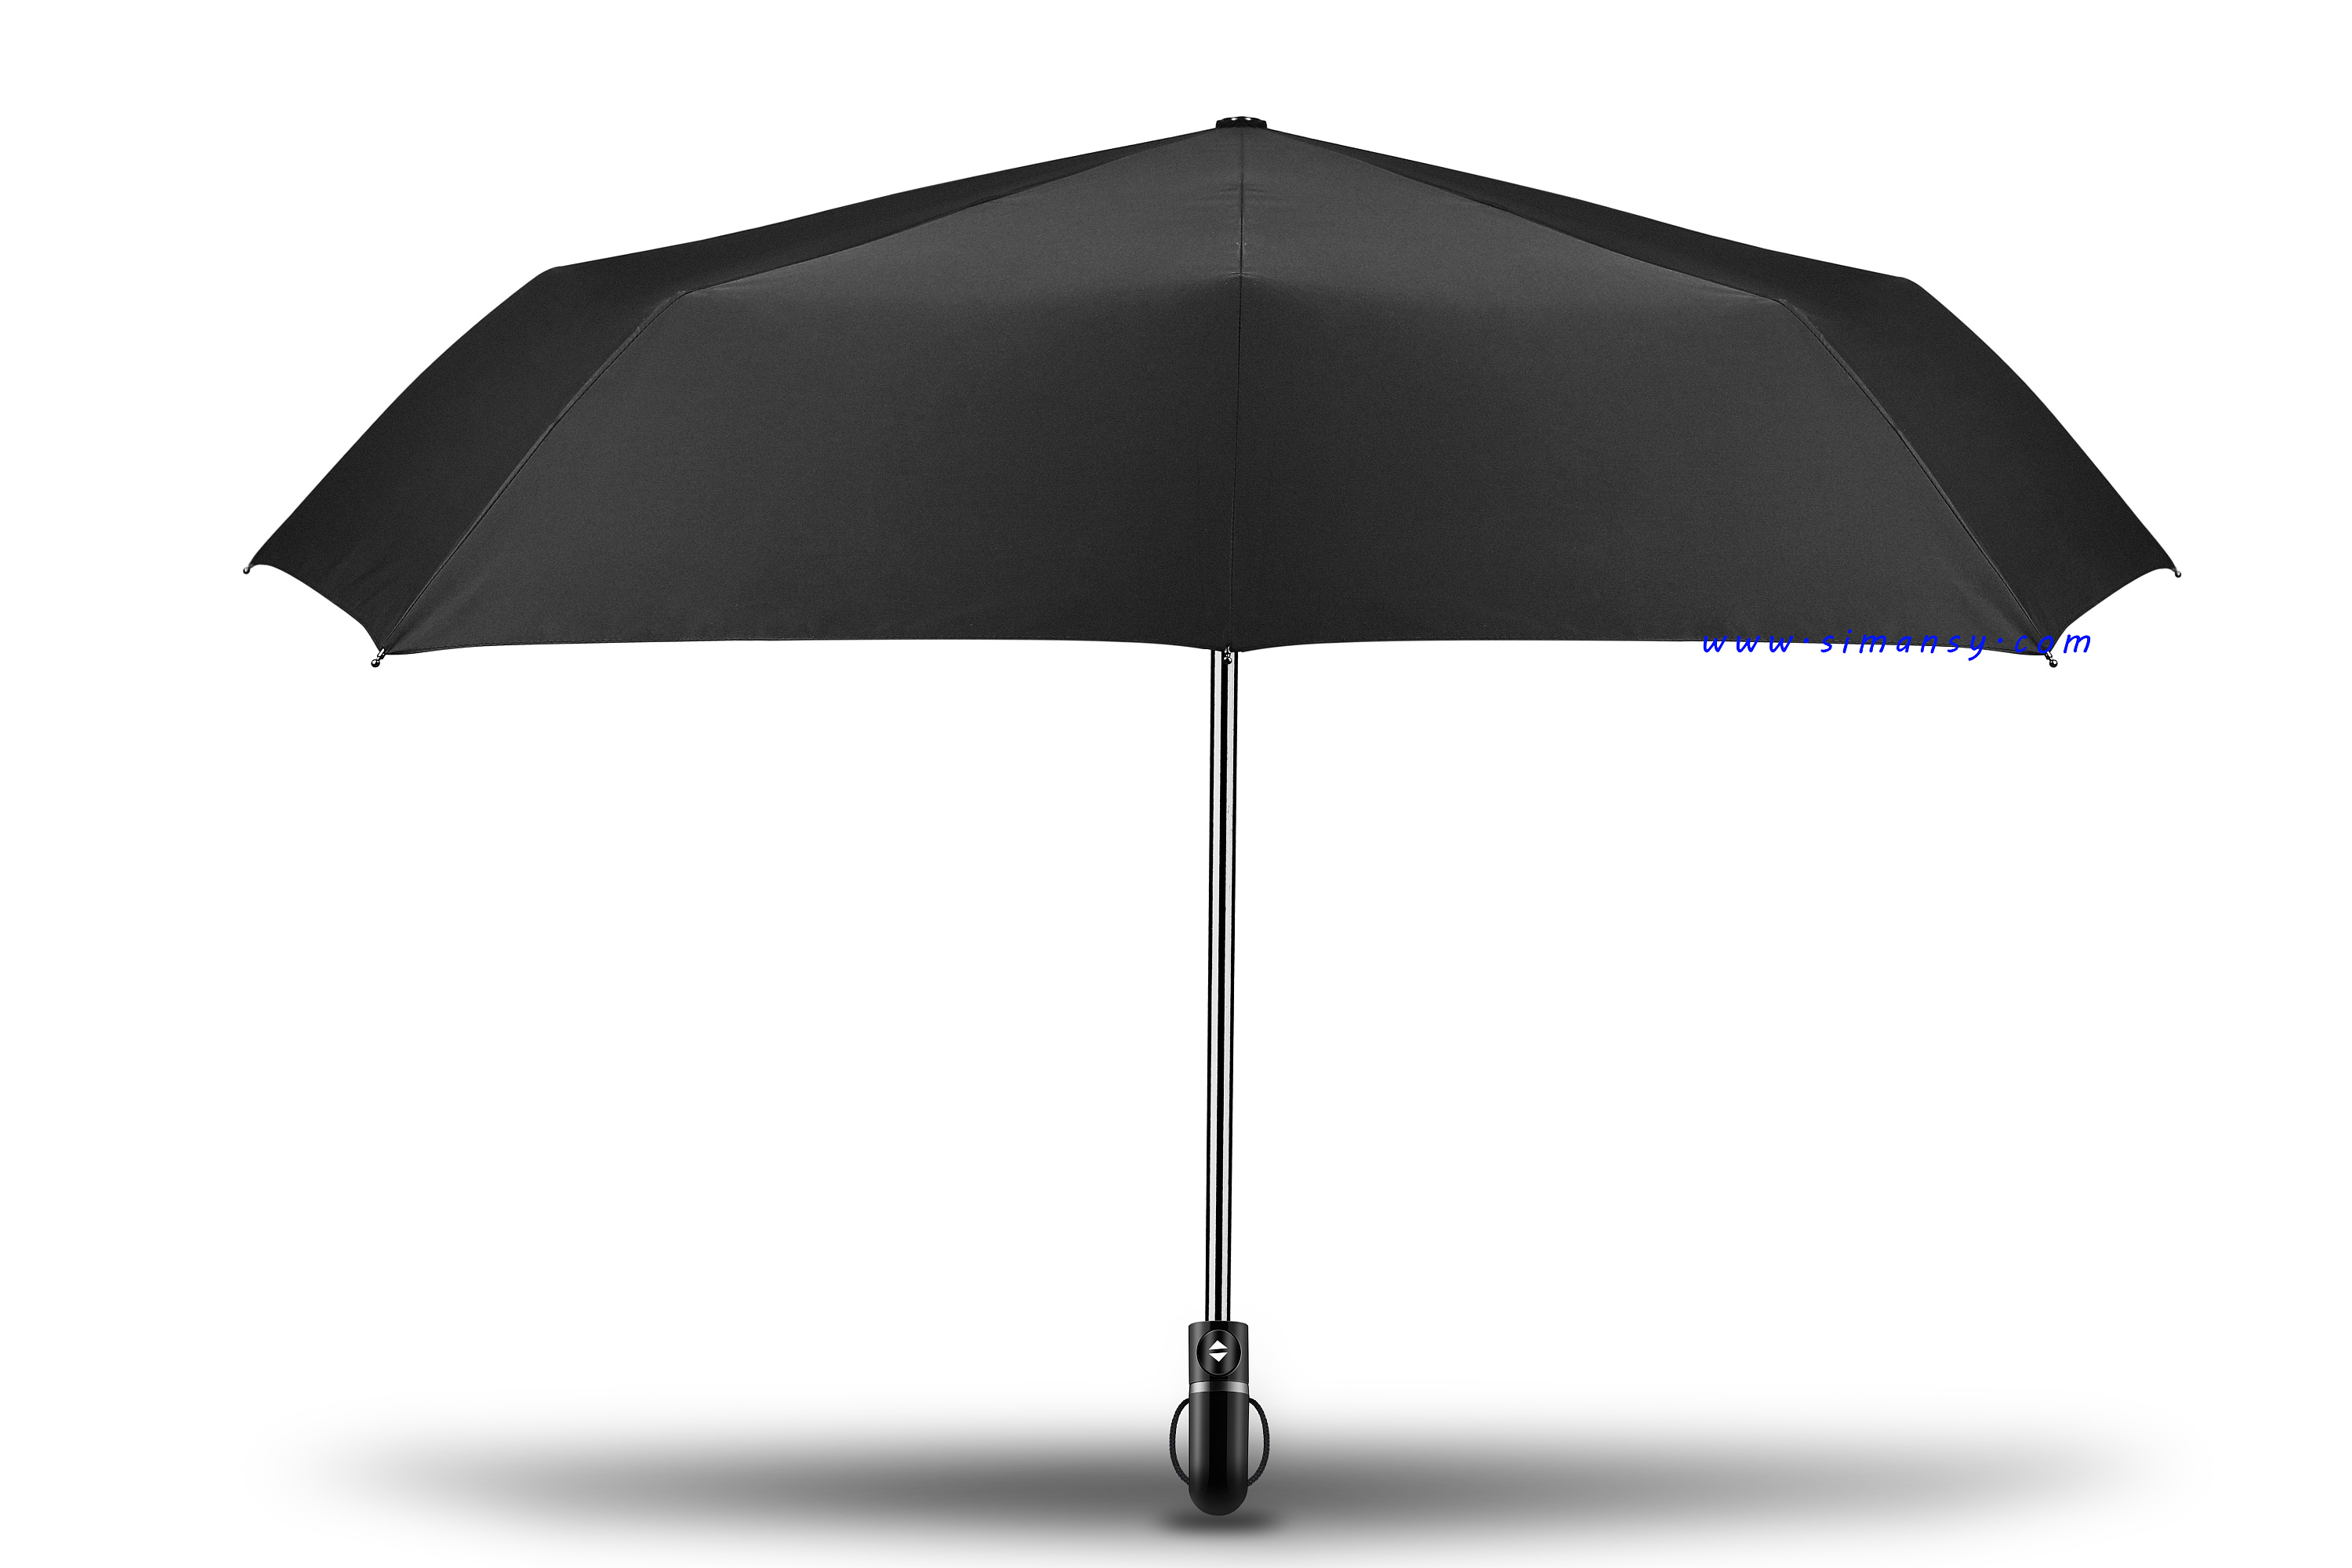 深圳市宏杰雨伞厂|深圳雨伞加工厂|雨伞厂家|雨伞工厂|雨伞厂|雨伞|晴雨伞|太阳伞|遮阳伞|高尔夫伞|定制雨伞|定做雨伞|雨伞HS编码